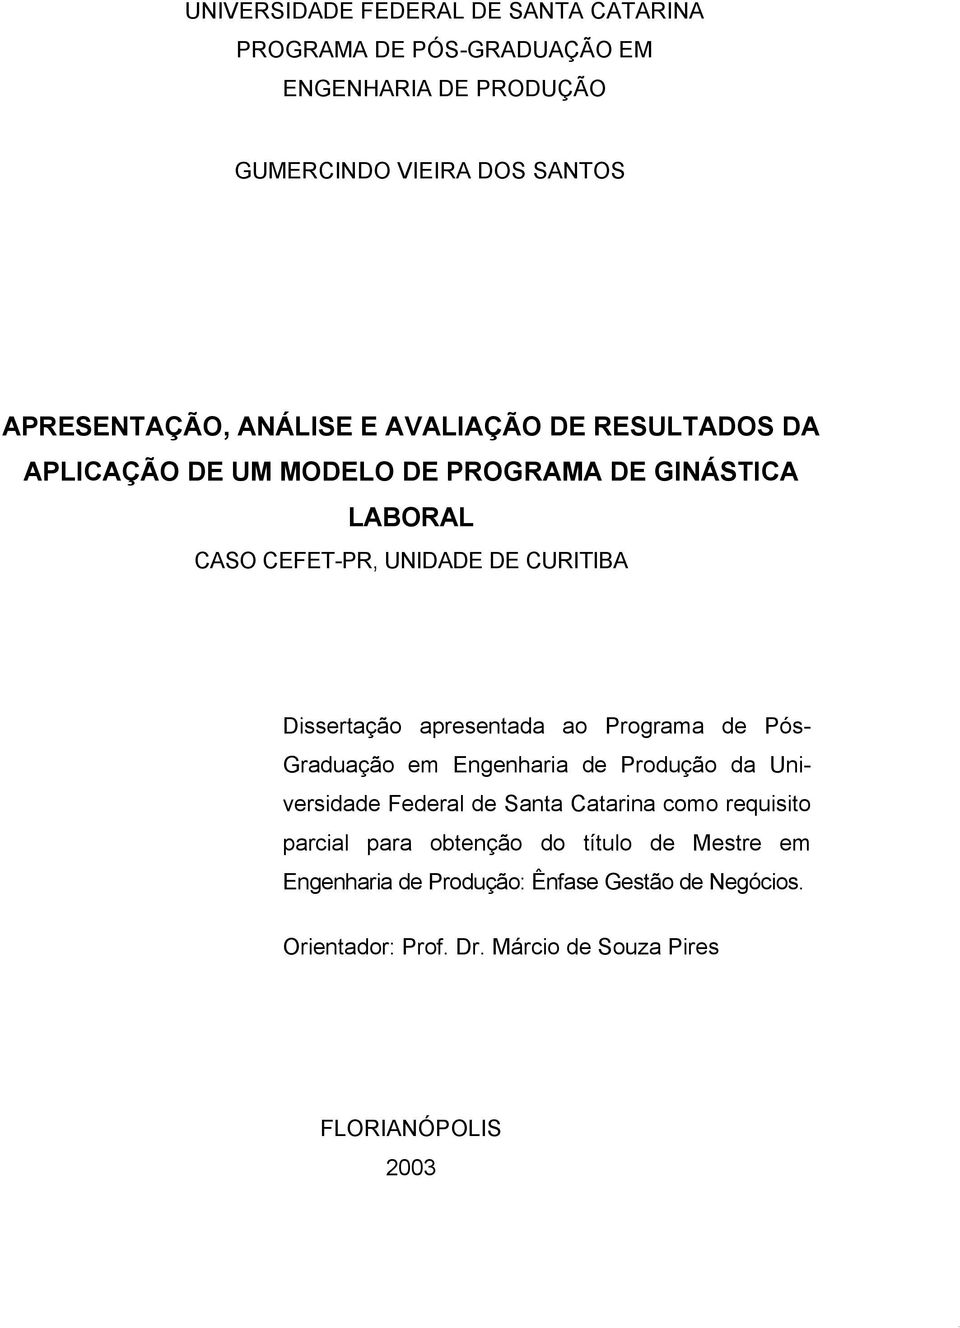 apresentada ao Programa de Pós- Graduação em Engenharia de Produção da Universidade Federal de Santa Catarina como requisito parcial para